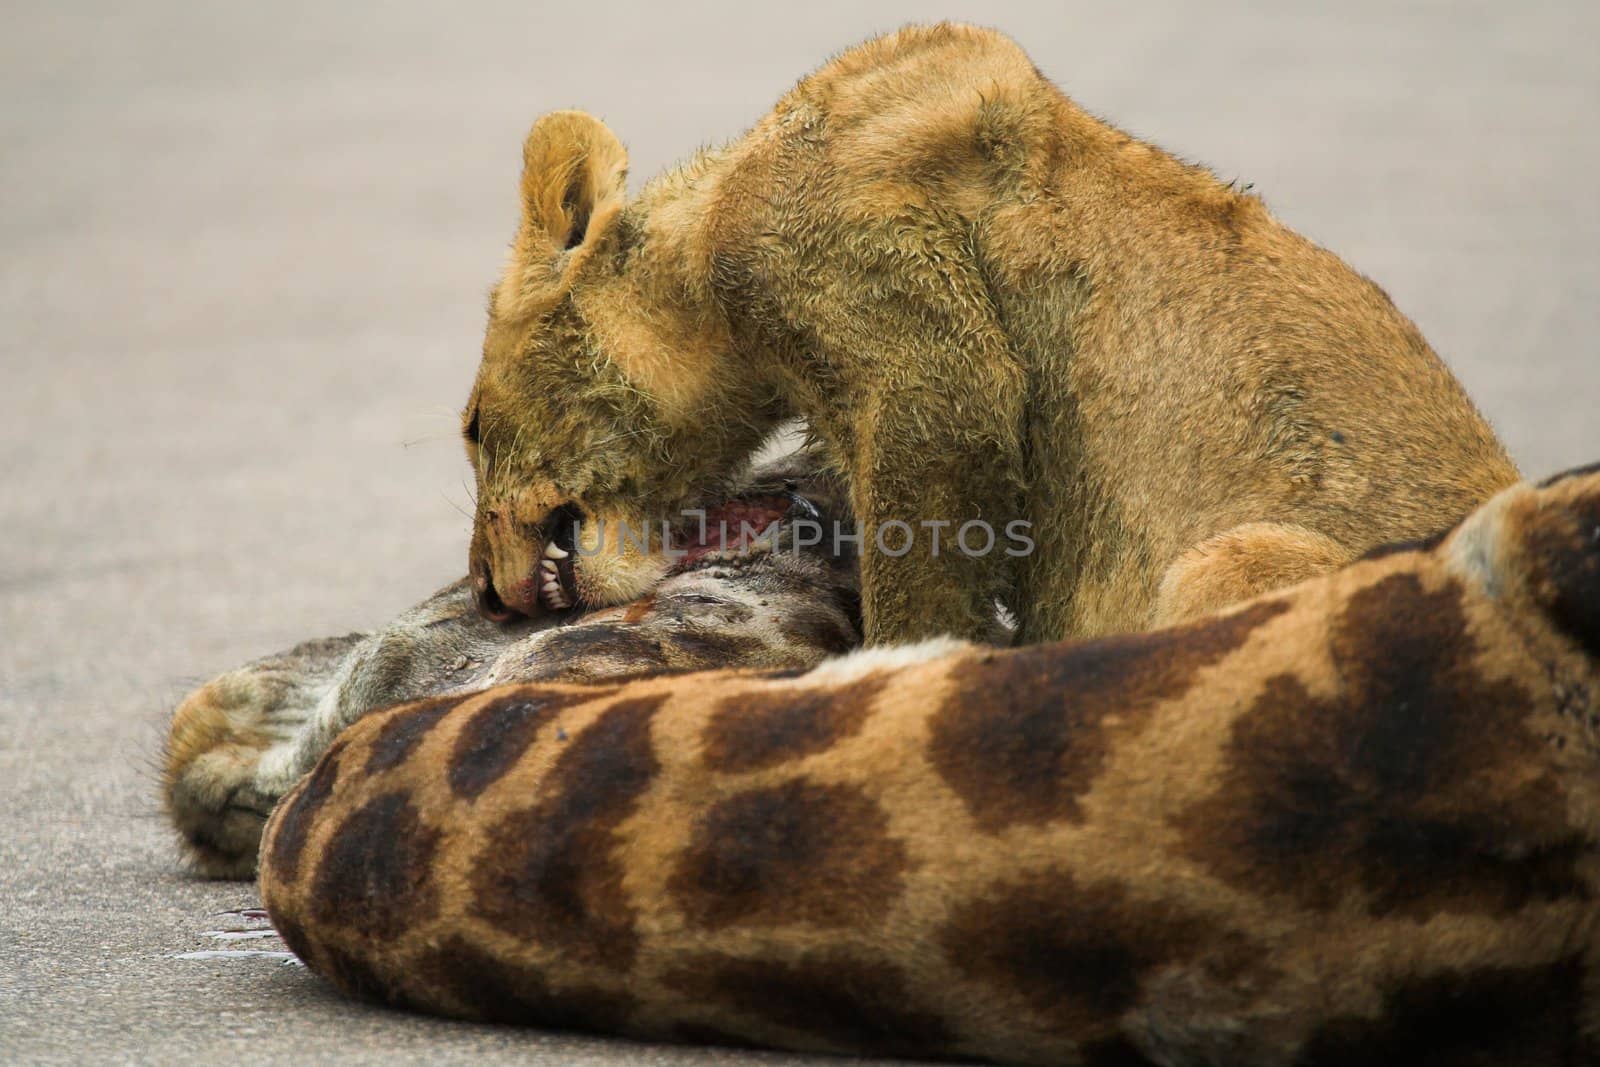 Cub Feeding by nightowlza